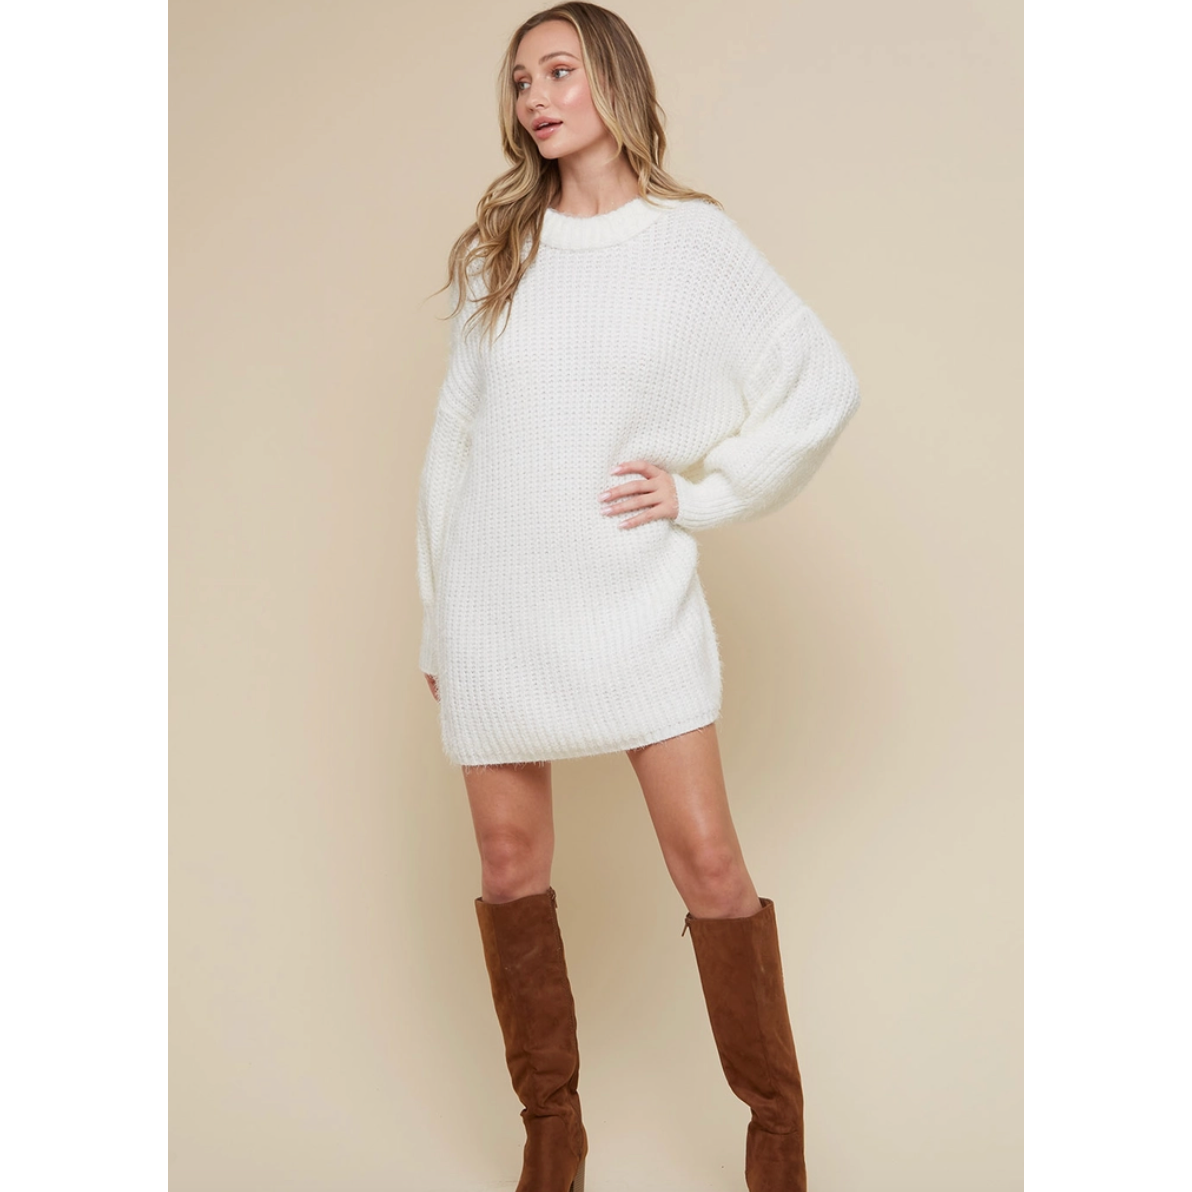 White Knit Sweater Dress